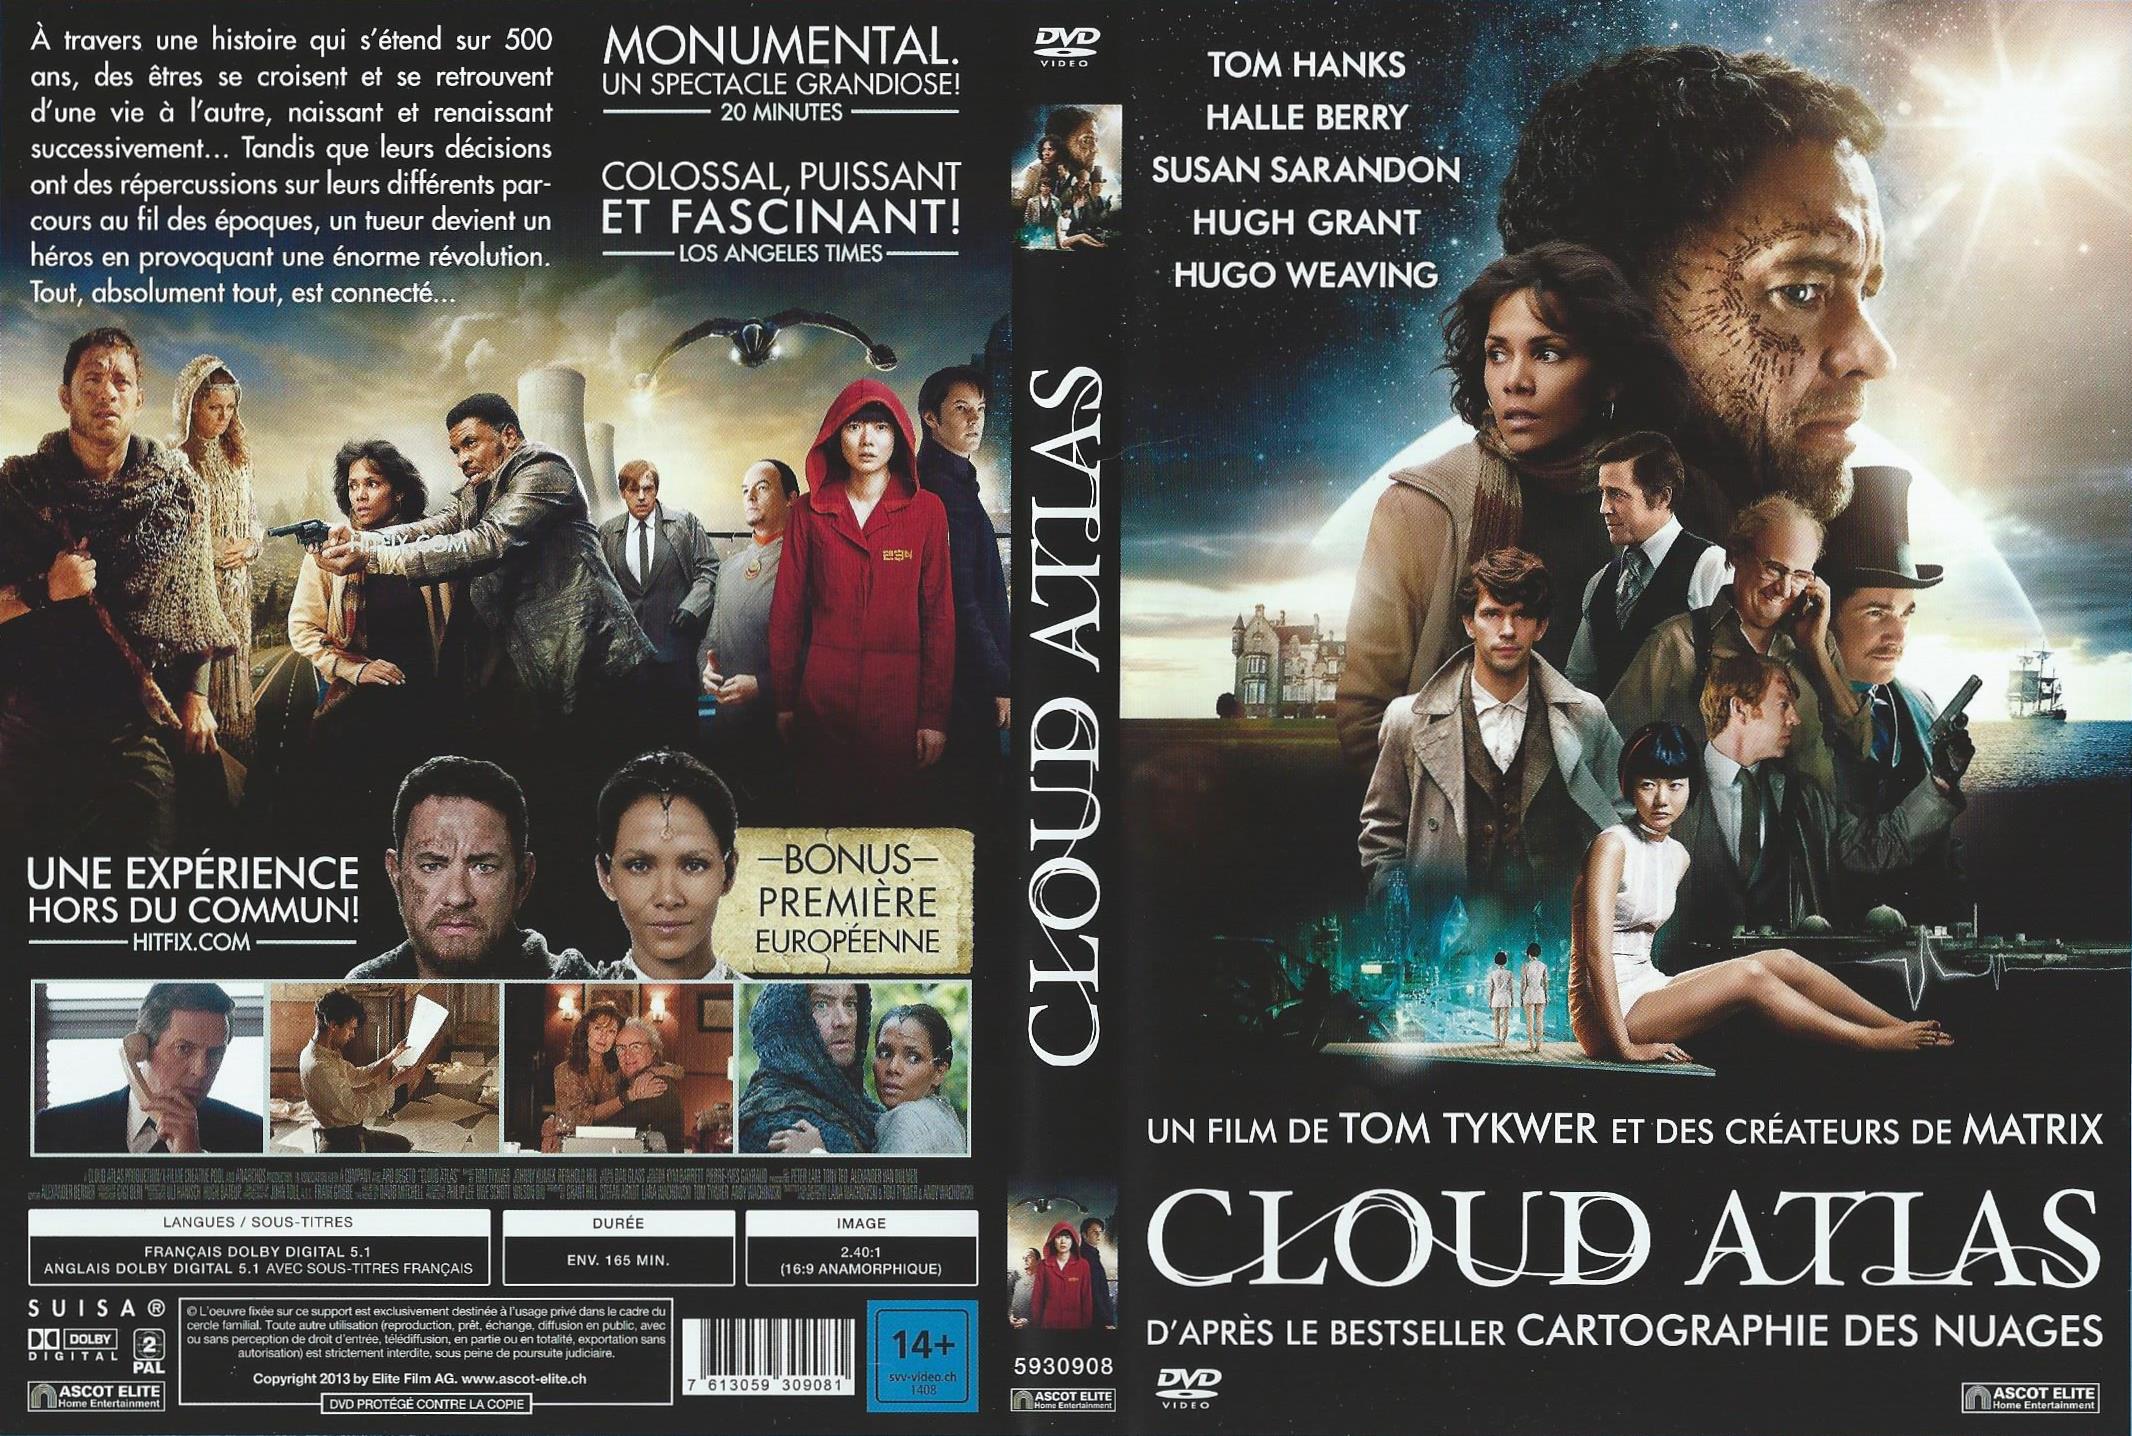 Jaquette DVD Cloud atlas v2